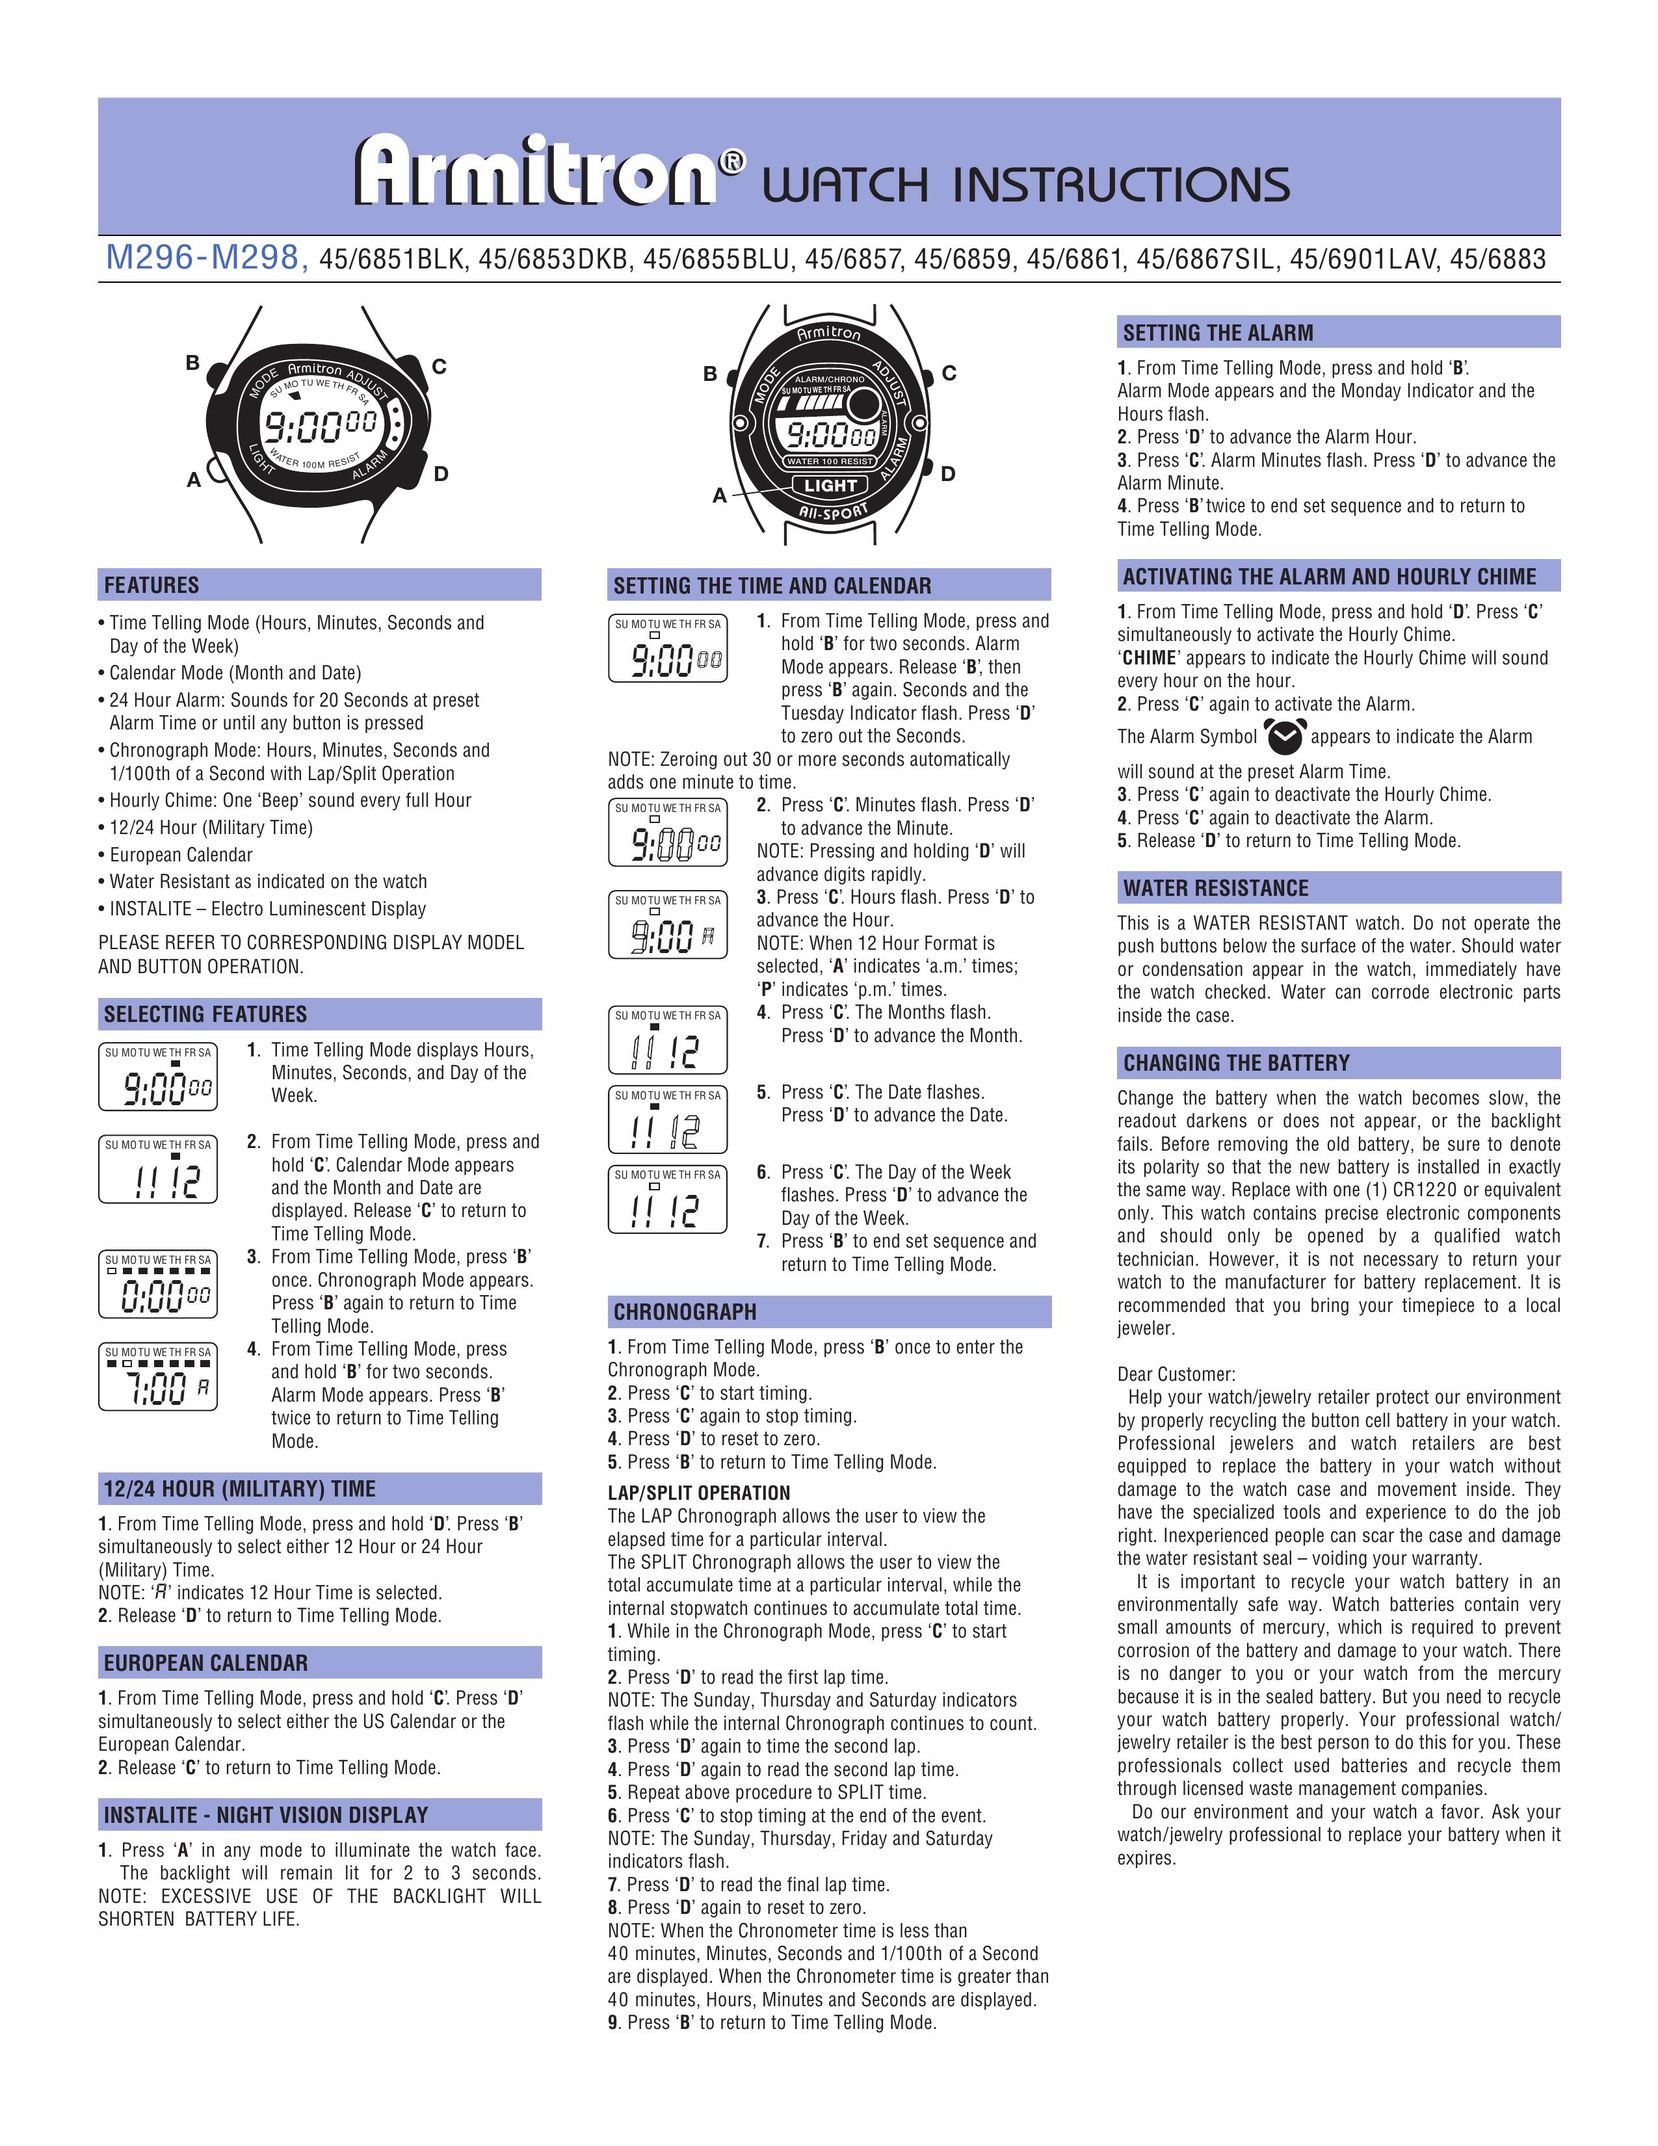 Armitron 45/6967PNK Watch User Manual